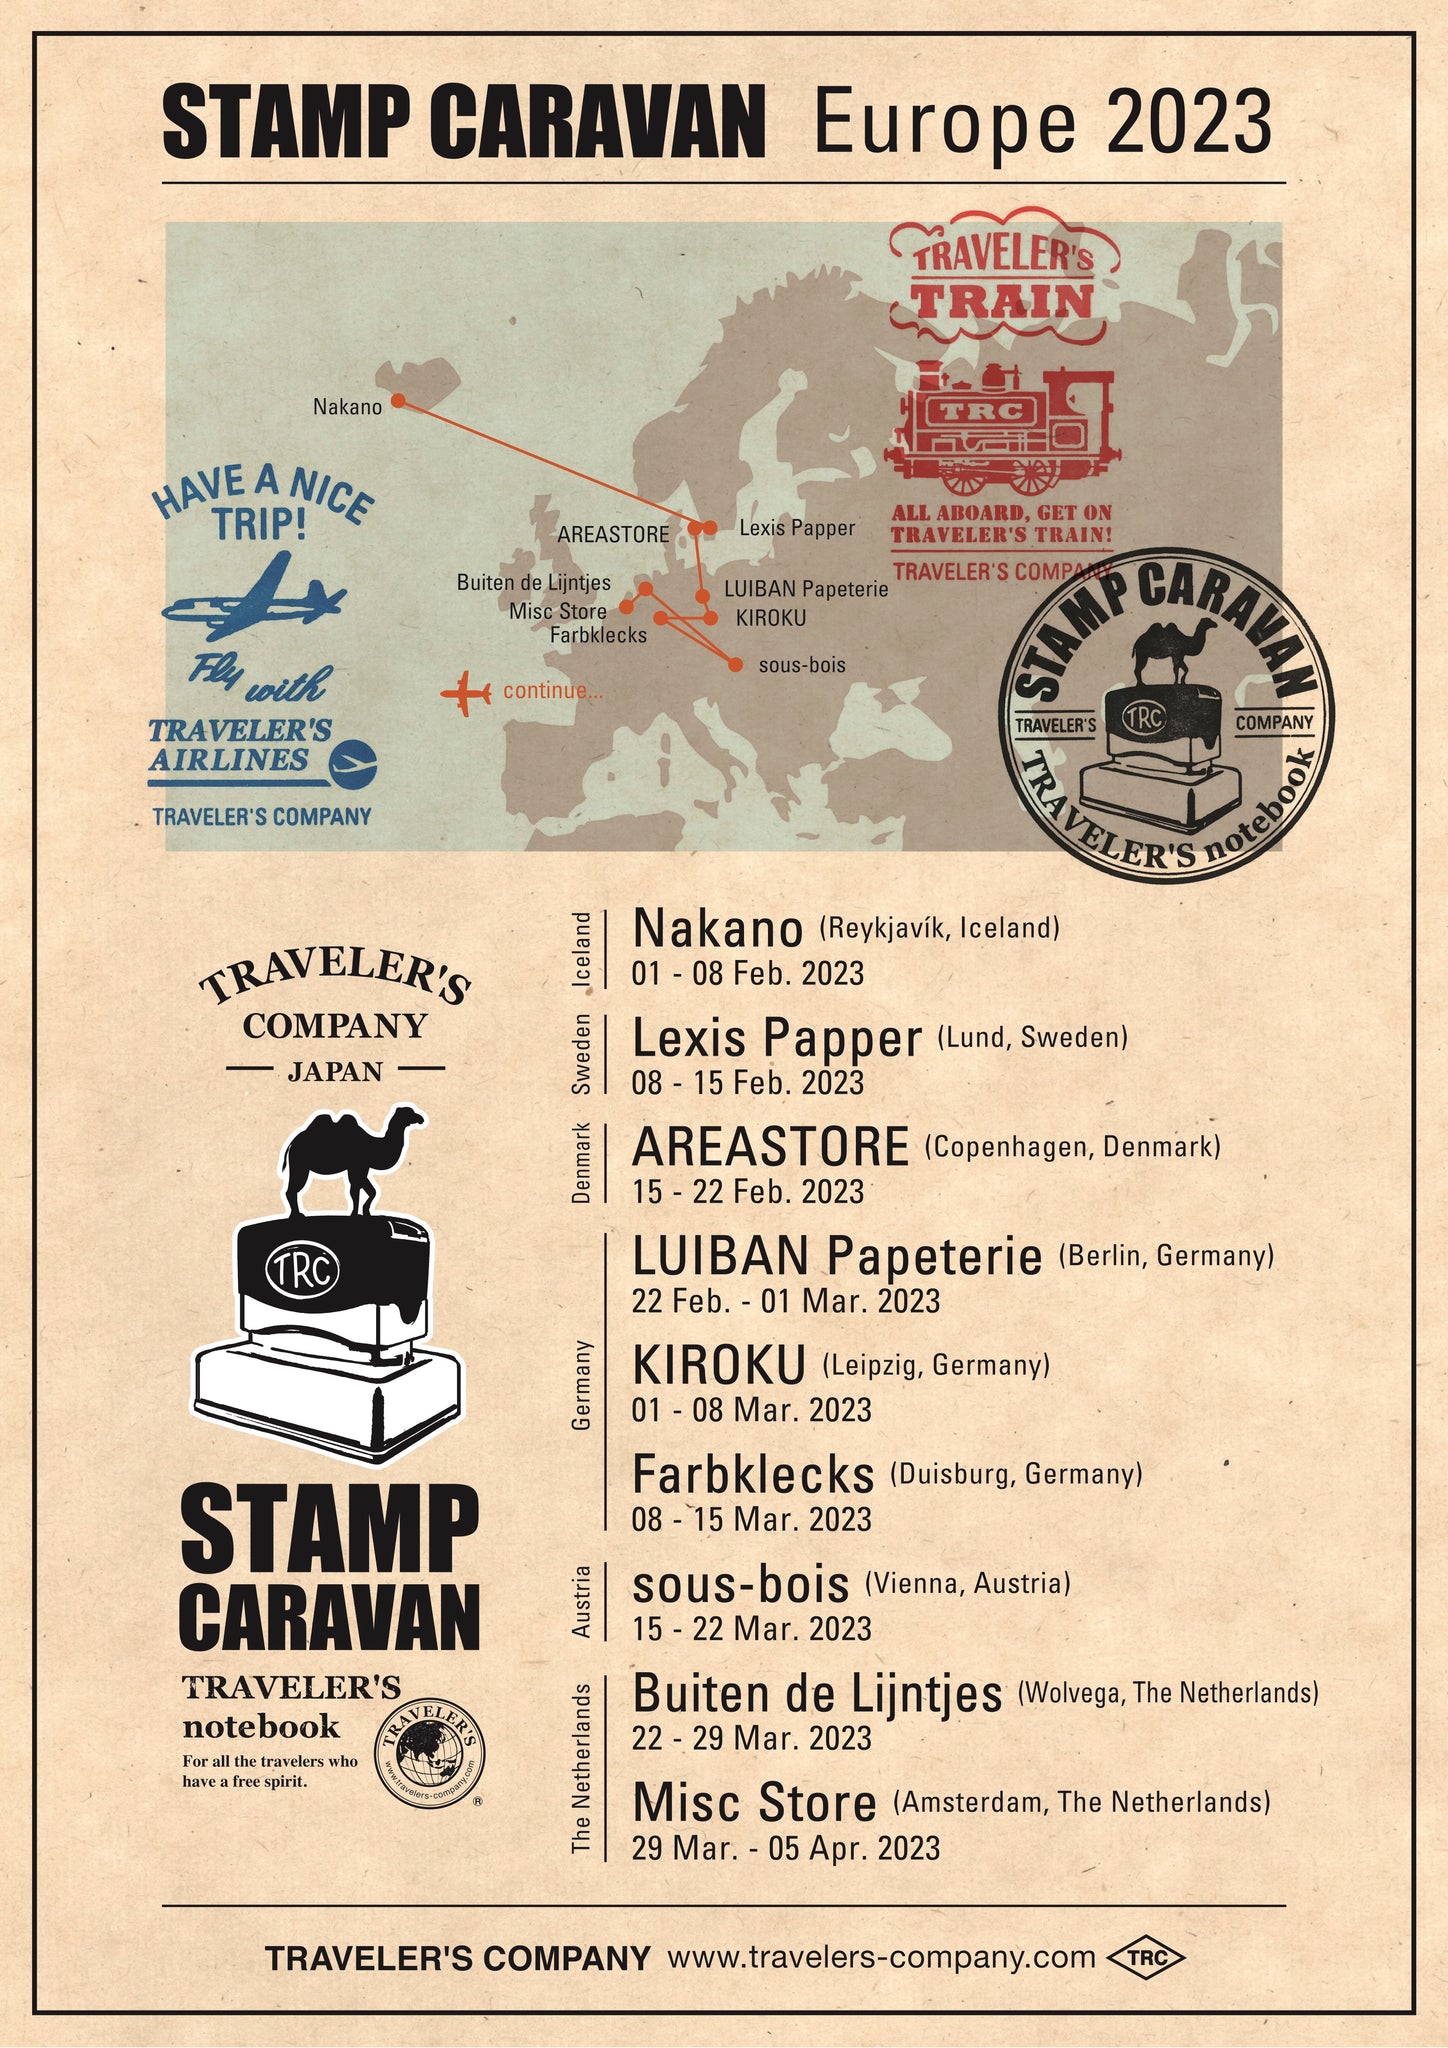 TRC Stamp Caravan at Misc-store Amsterdam